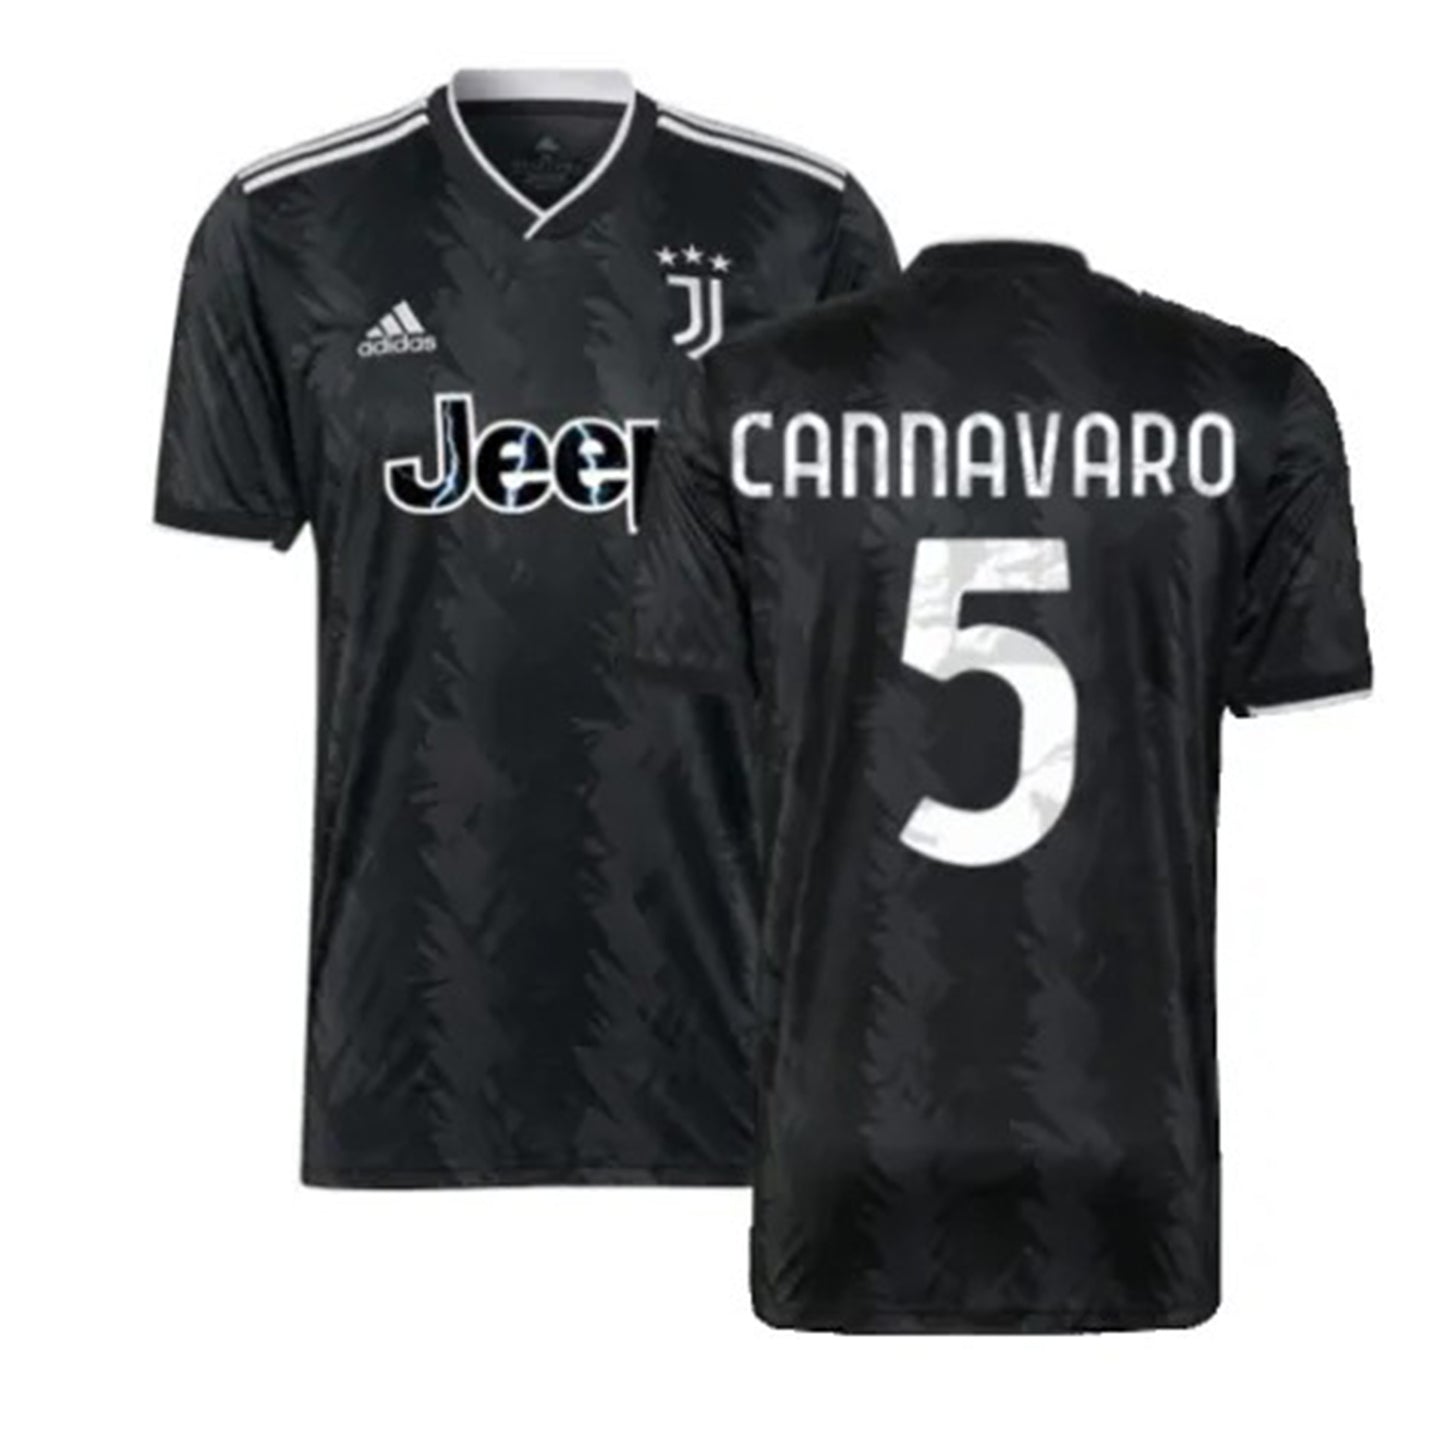 Fabio Cannavaro Juventus 5 Jersey